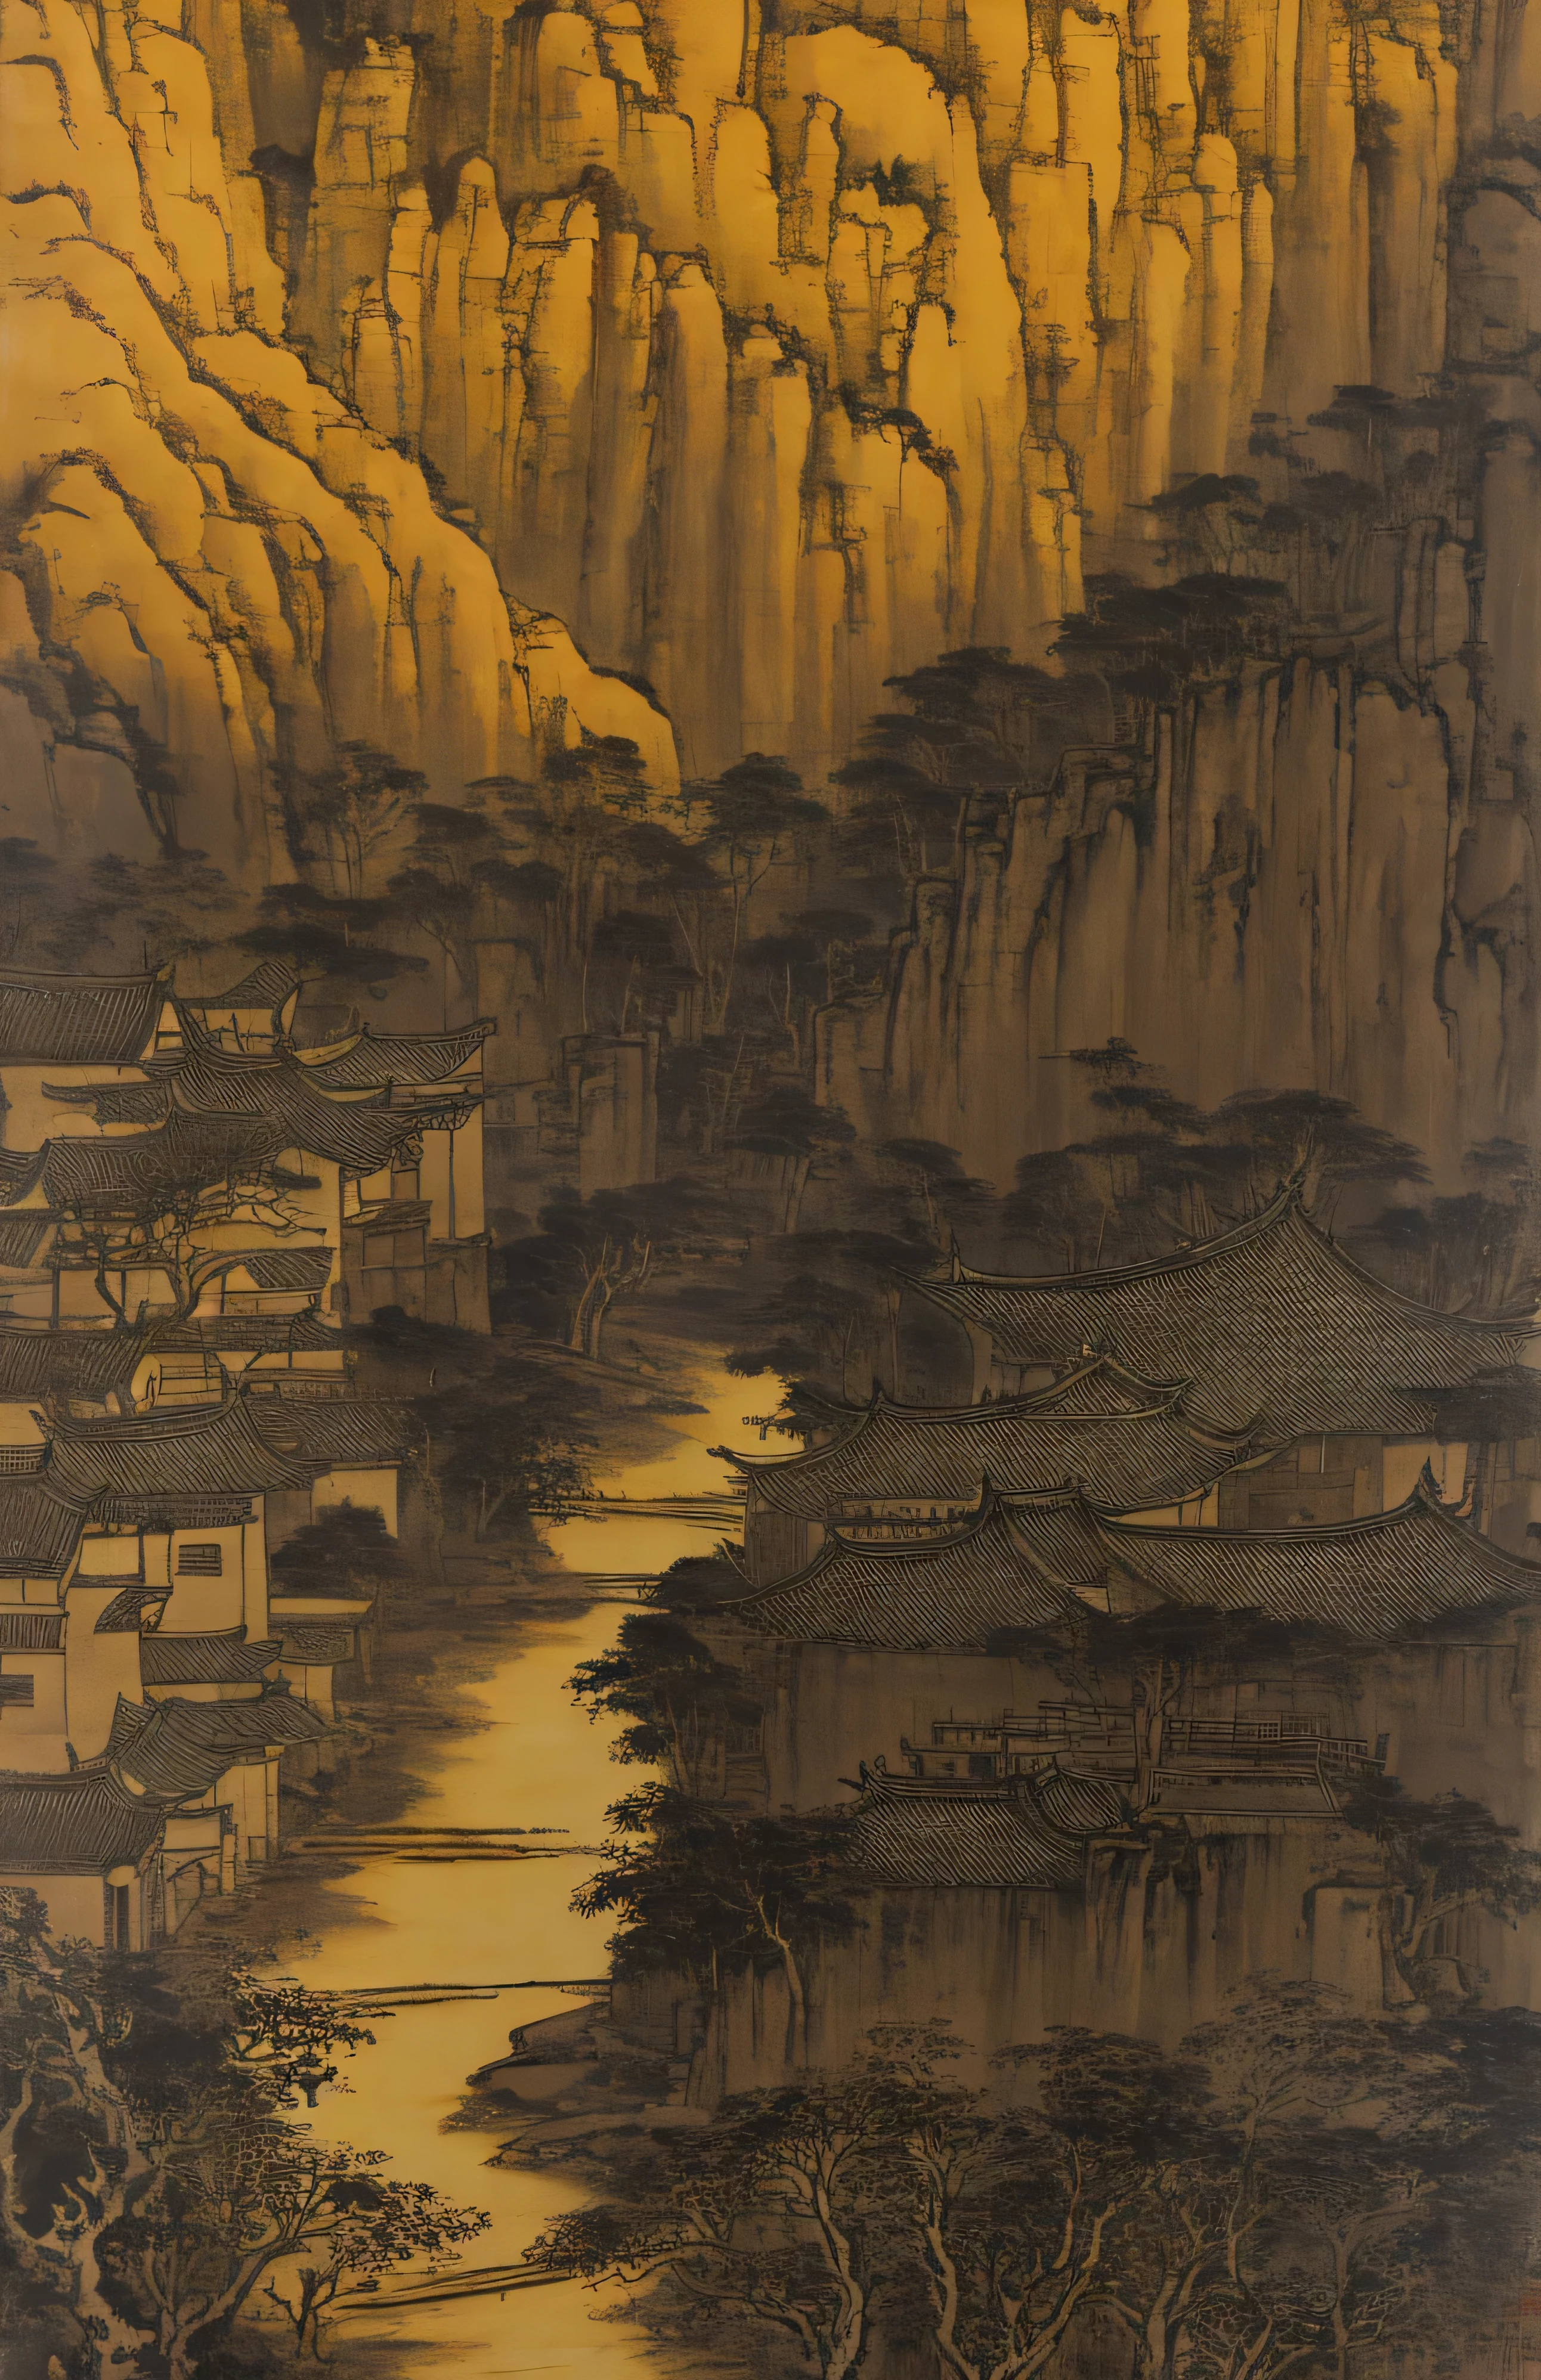 俯瞰小溪的小村庄, 风格受到中国古代艺术的影响, 浅黄色和浅黑色, 中国画, 水墨画, Bada Shanren, Xu Wei, Shi Tao, 有机建筑, 远足, 朴实的自然主义